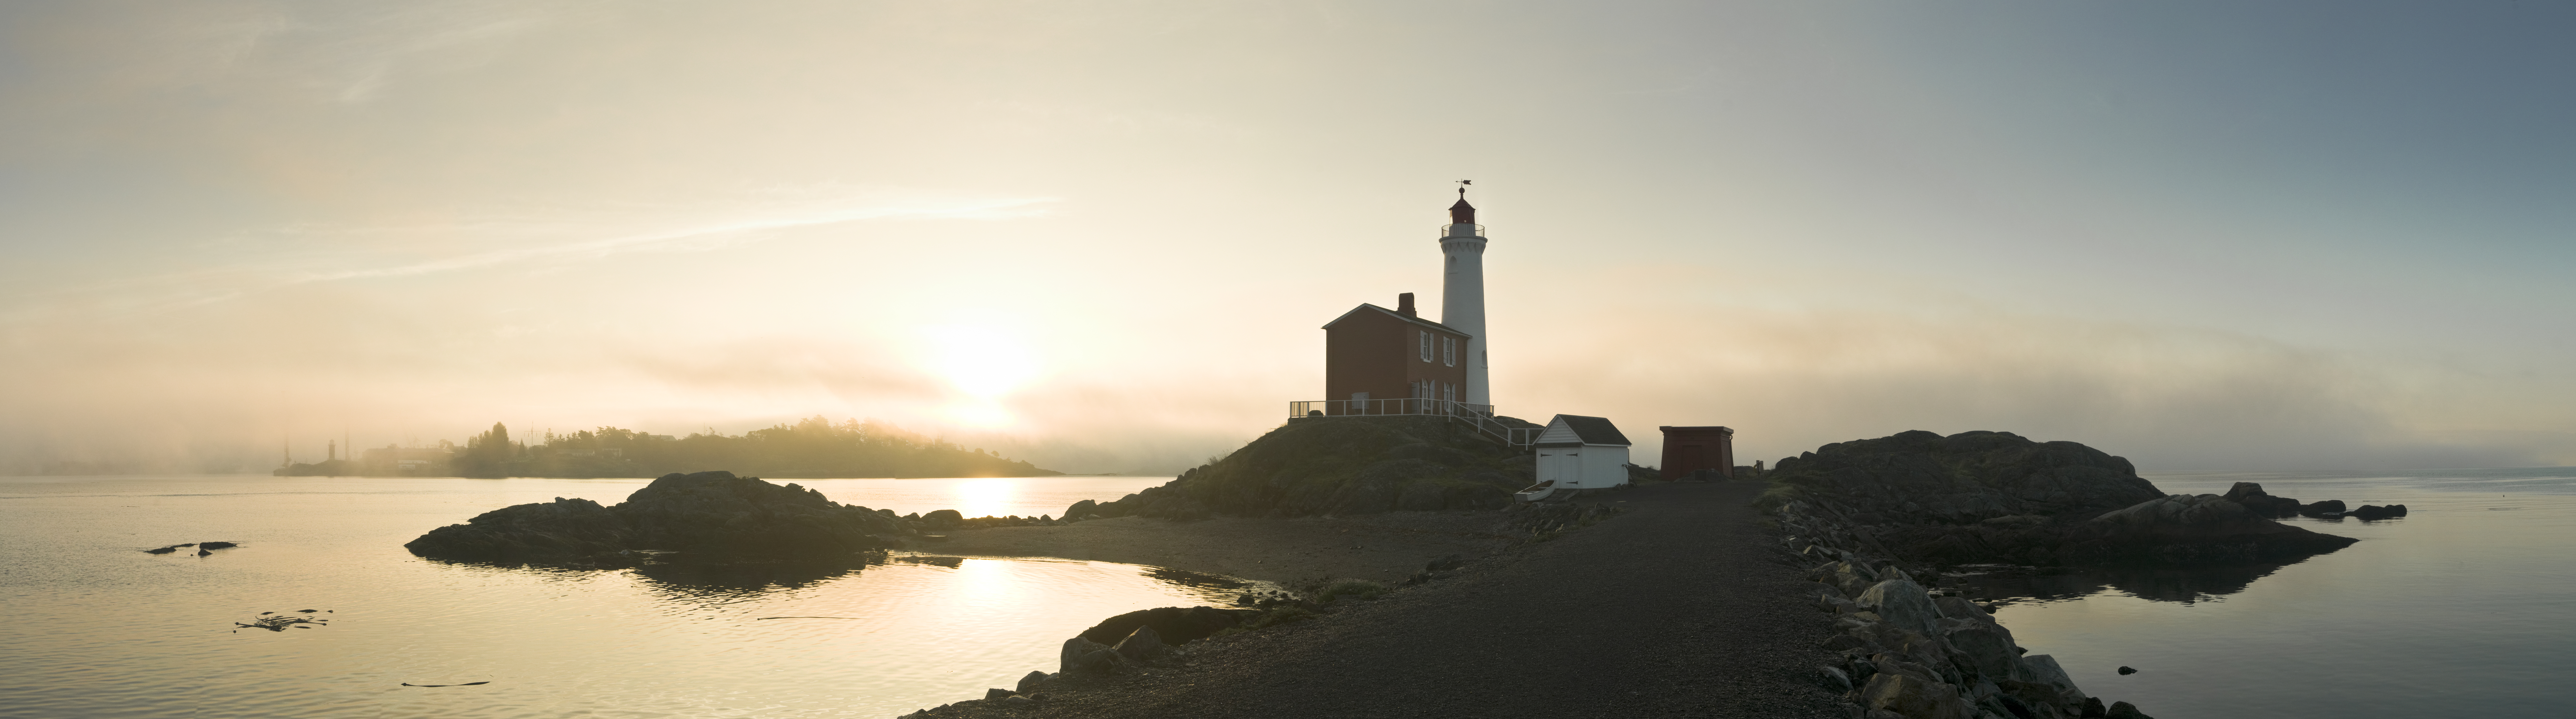 Le lever du soleil et la brume matinale donnent des couleurs dorées au phare de Fisgard.